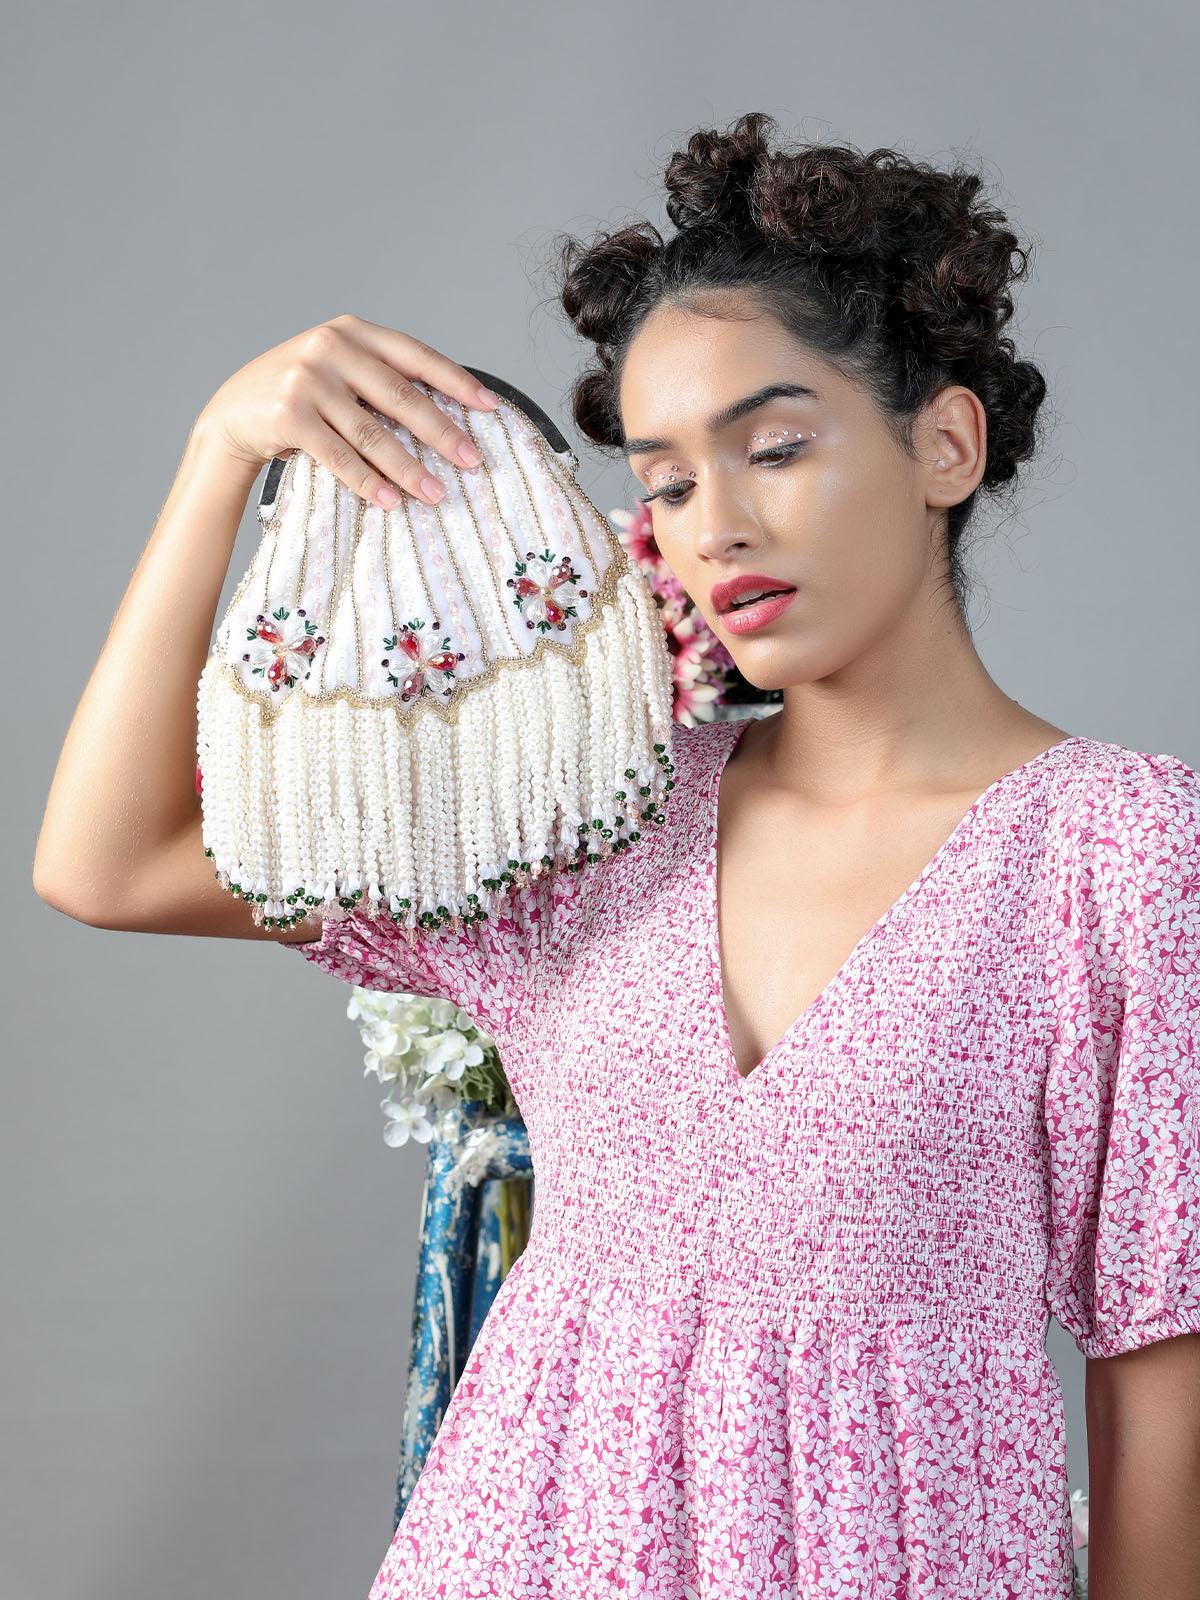 White stunning tassel embellished sling bag - Odette